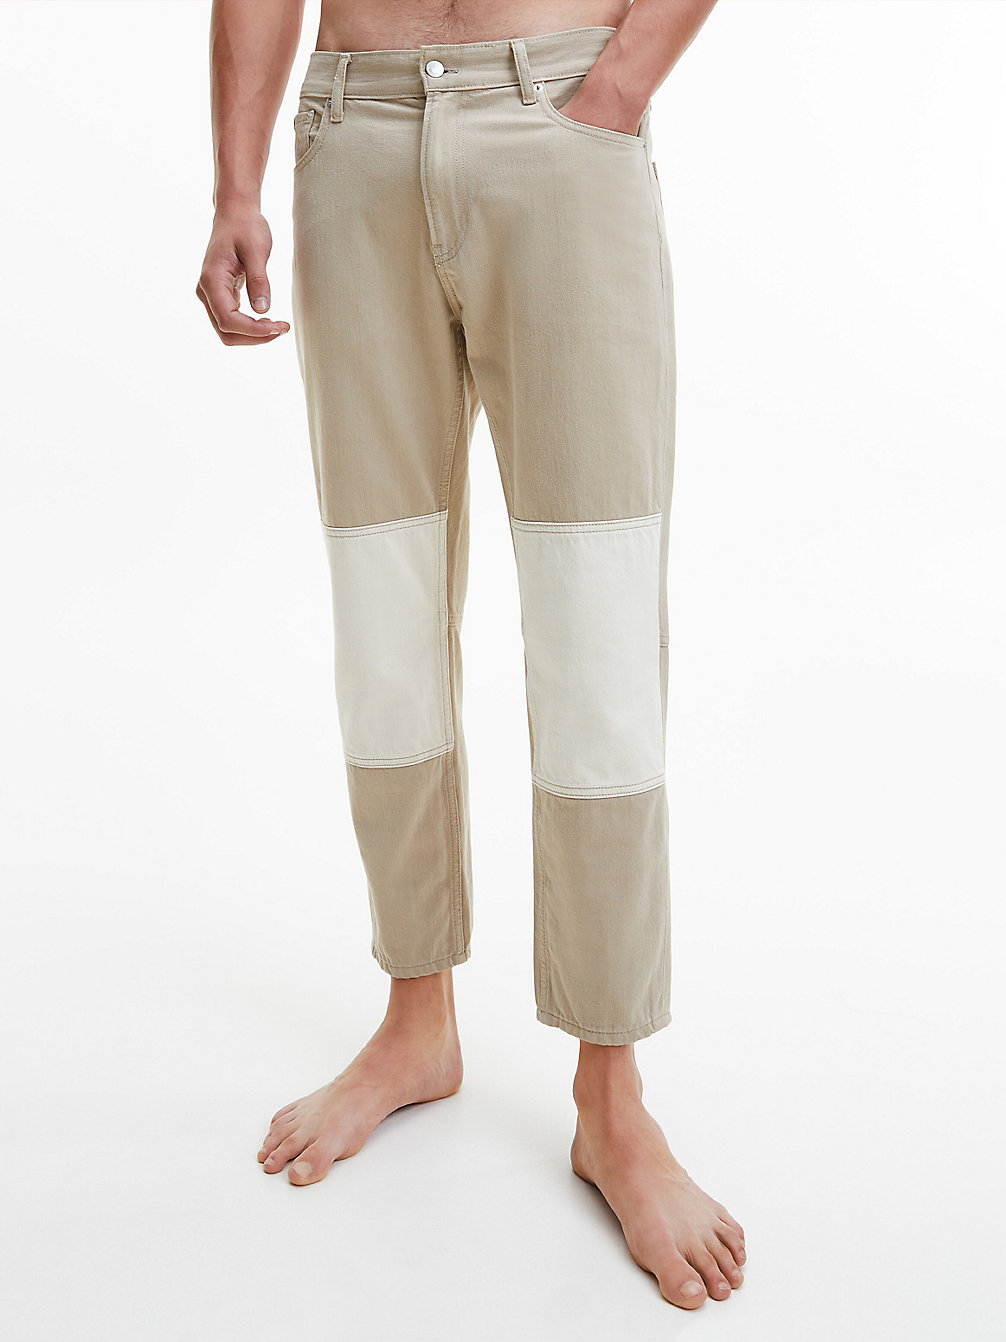 NEUTRAL DENIM > Двухцветные джинсы Dad > undefined женщины - Calvin Klein